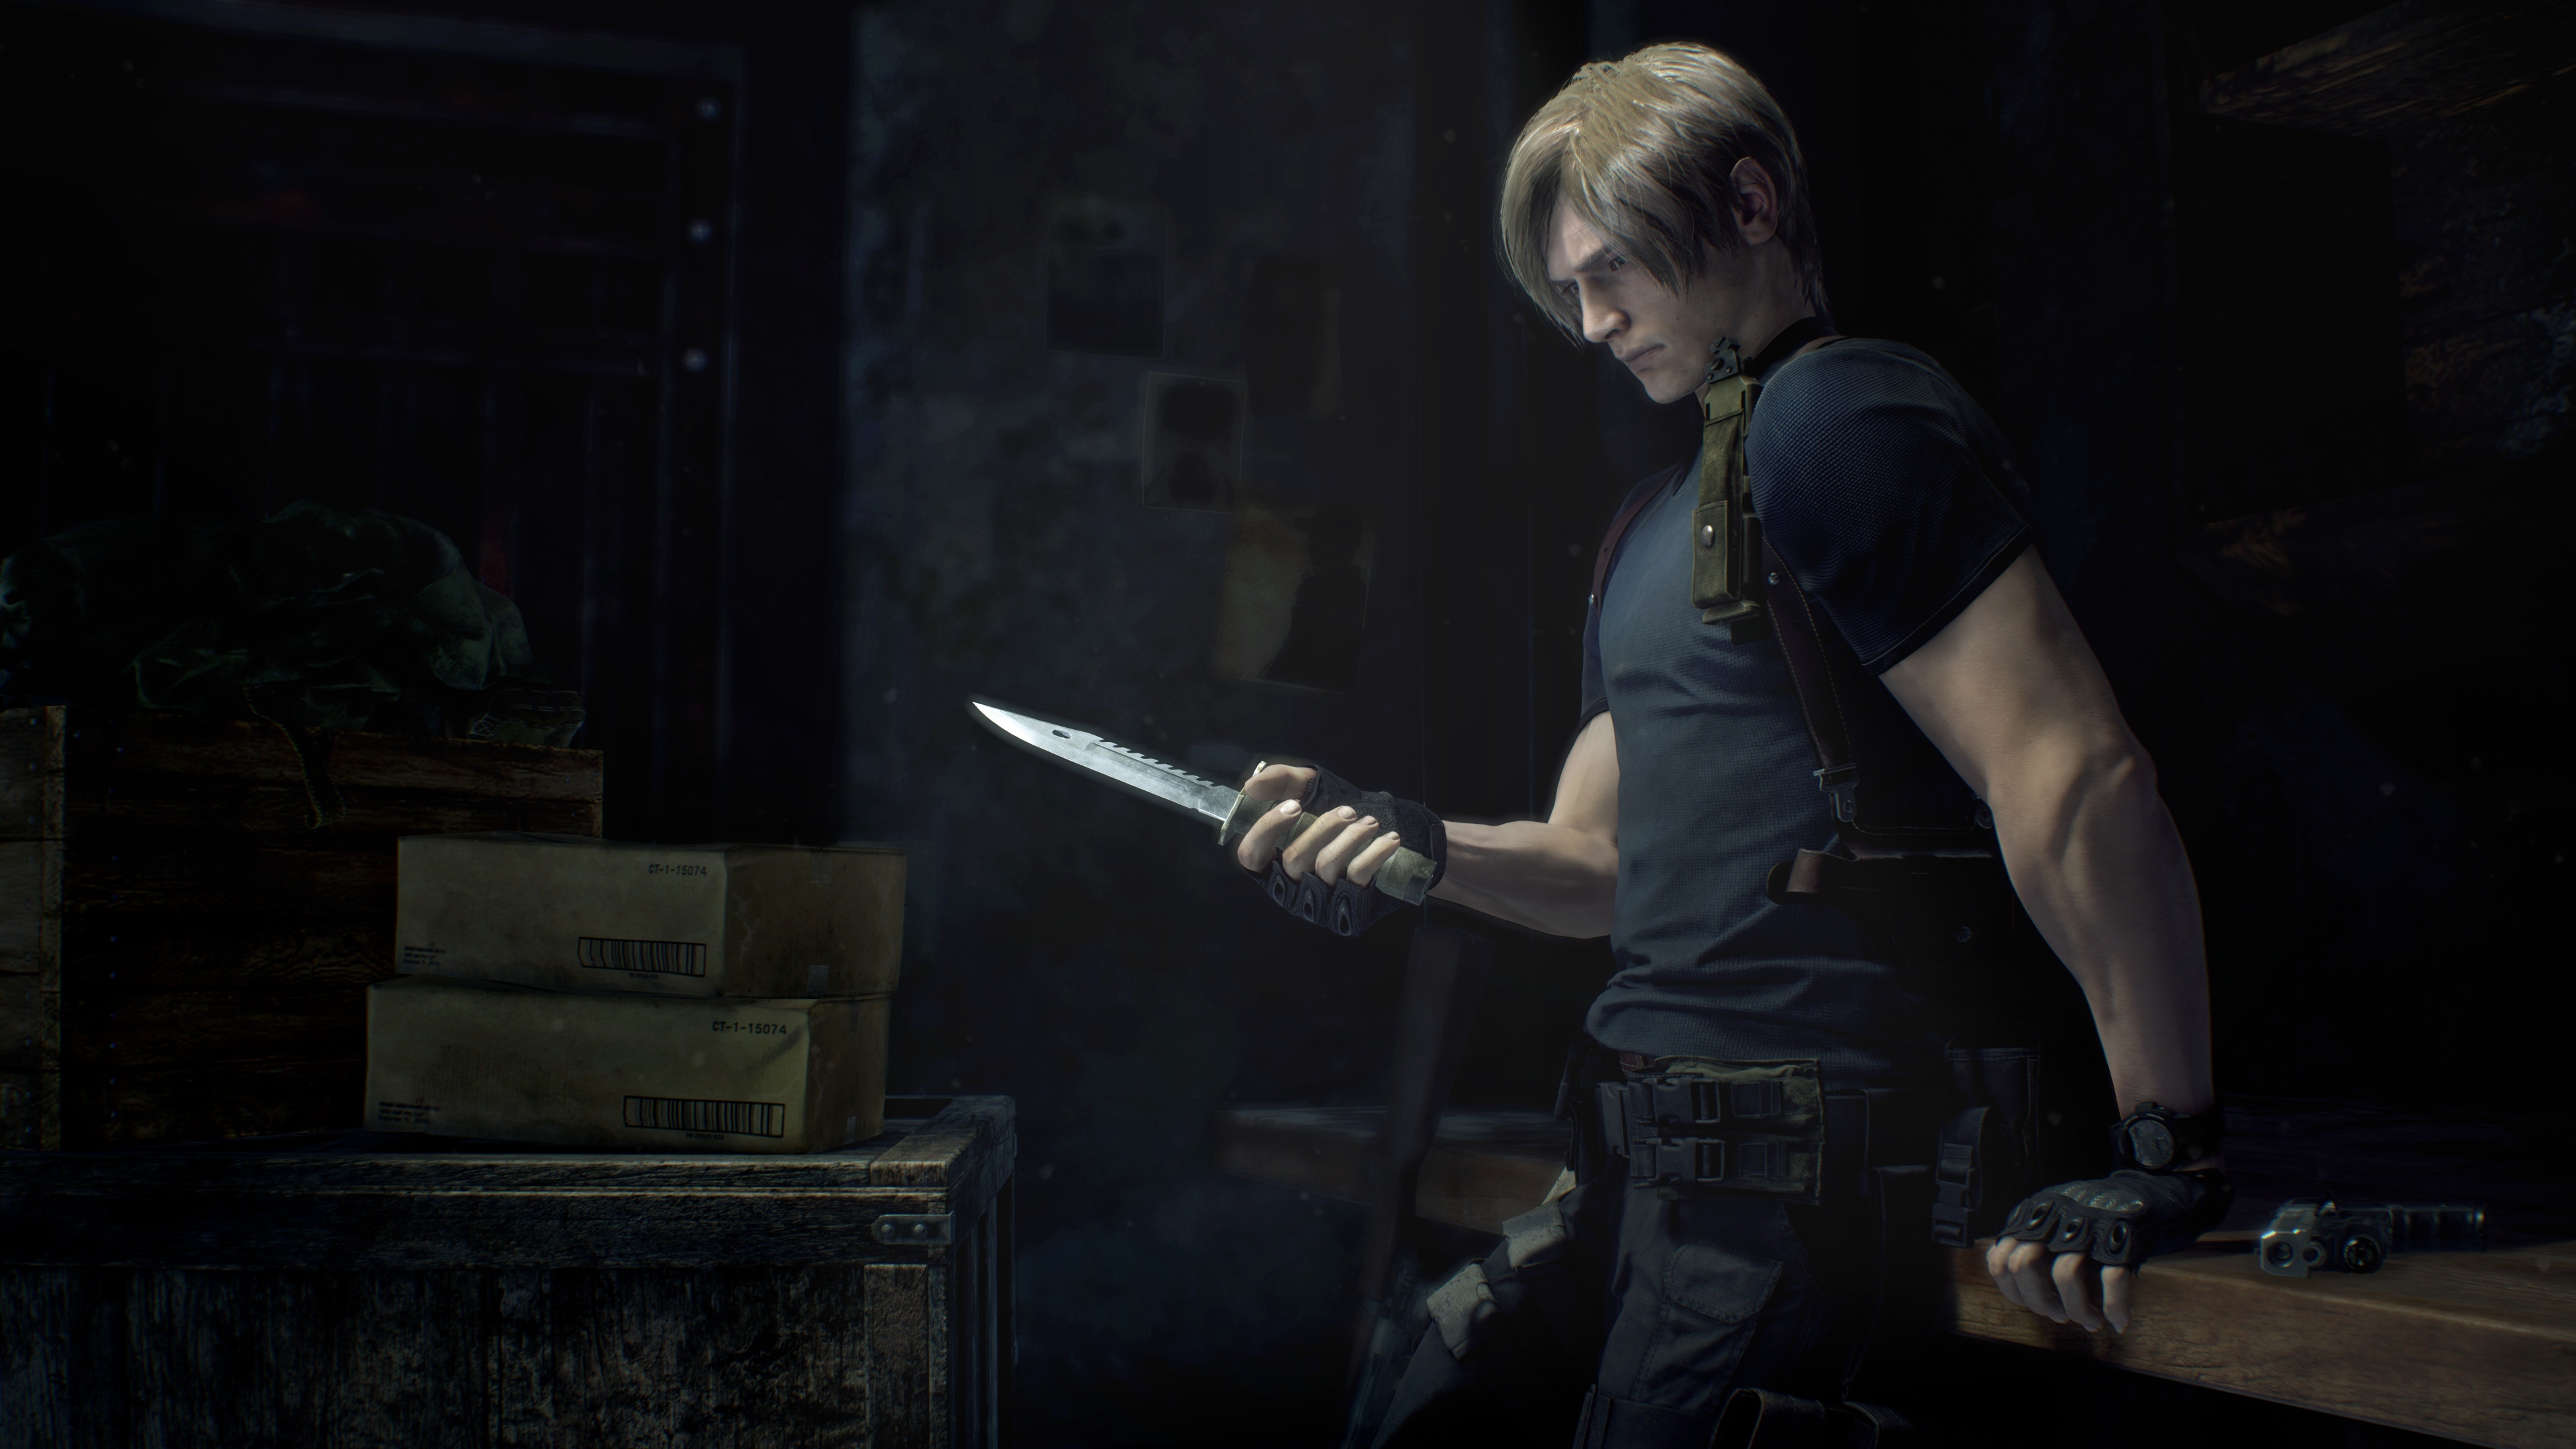 Resident Evil Death Island CG Animated Film Announced